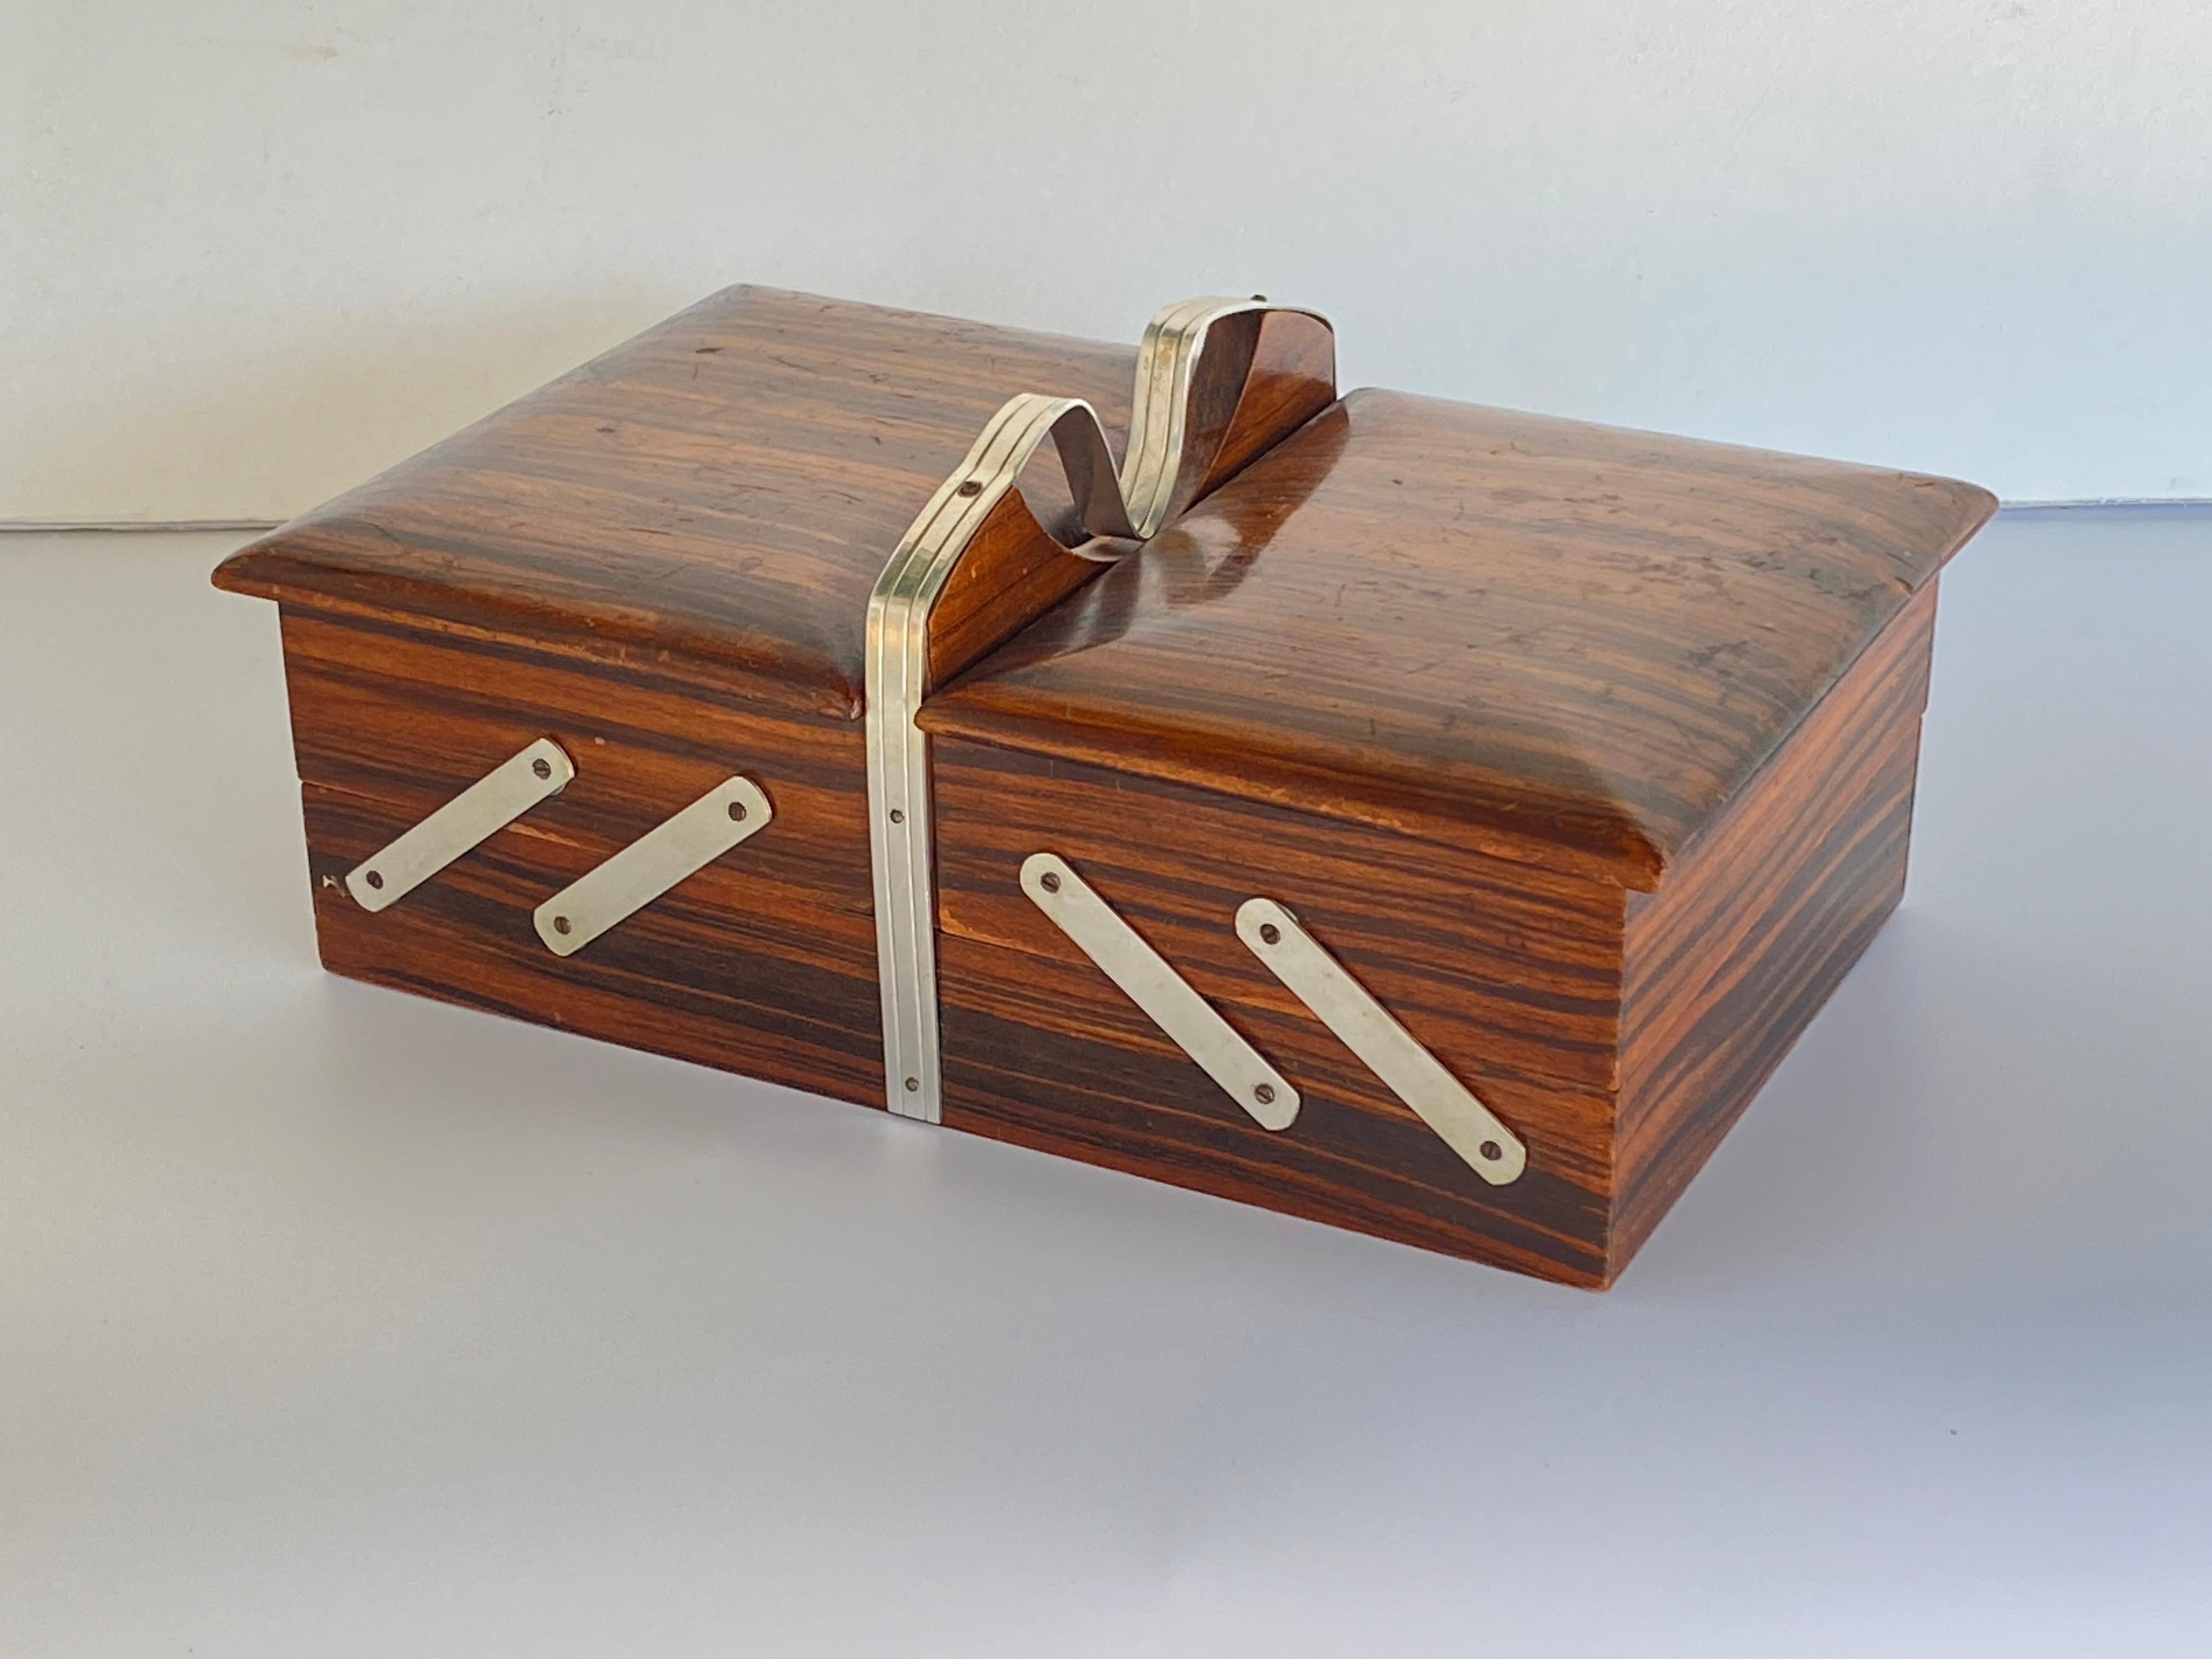 Boîte très rare en ébène de Macassar et bois de satin. C'est une boîte de jeux, qui s'ouvre en articulant les rabats de chaque côté, et qui permet de mettre les nombreux objets de jeux que l'on veut à l'intérieur, elle peut aussi servir à mettre des